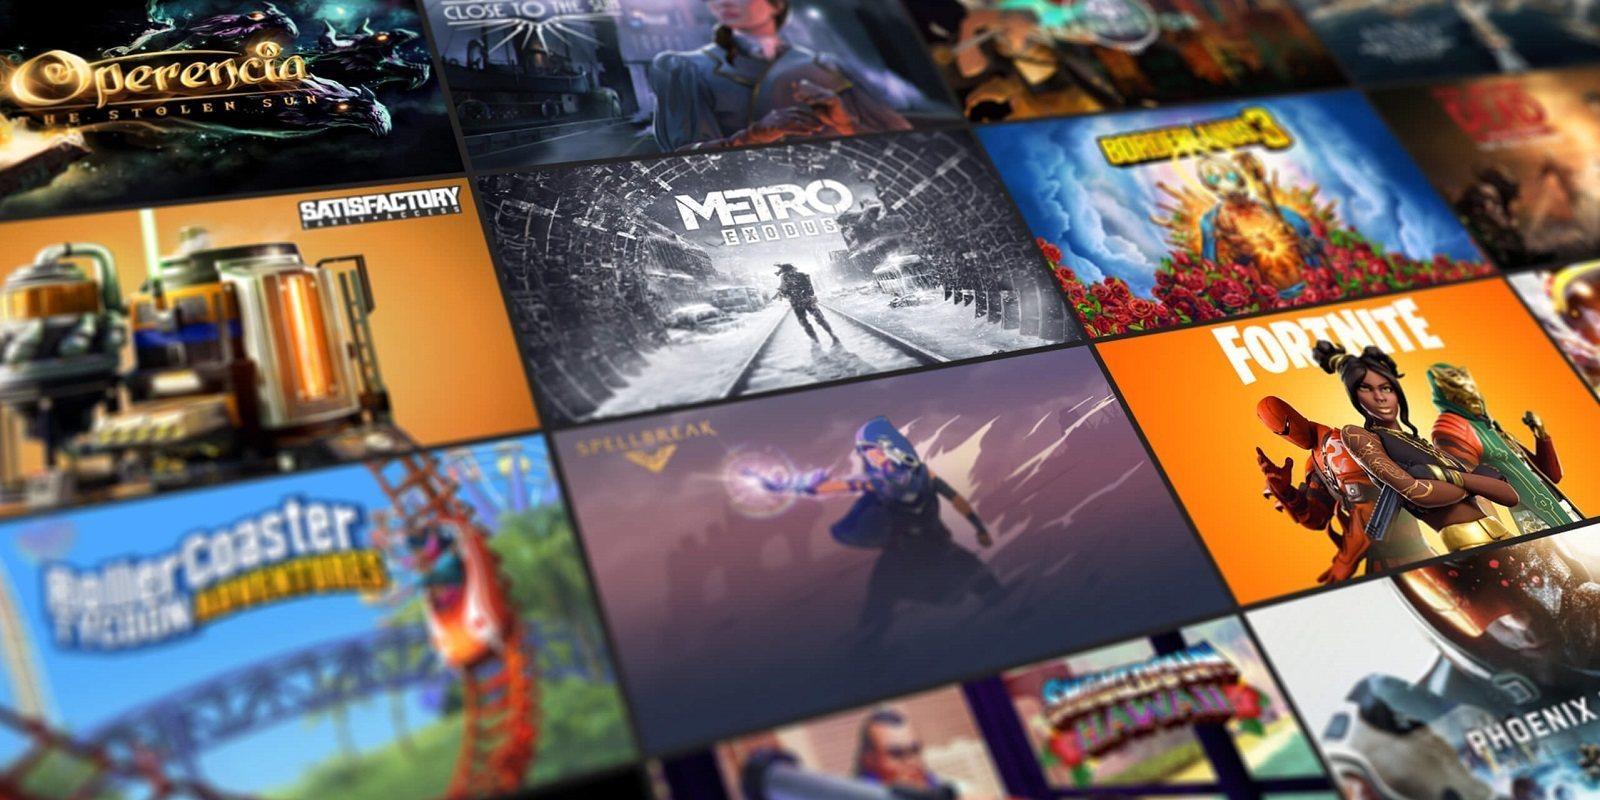 La Epic Games Store prepara algo grande para el próximo juego gratis